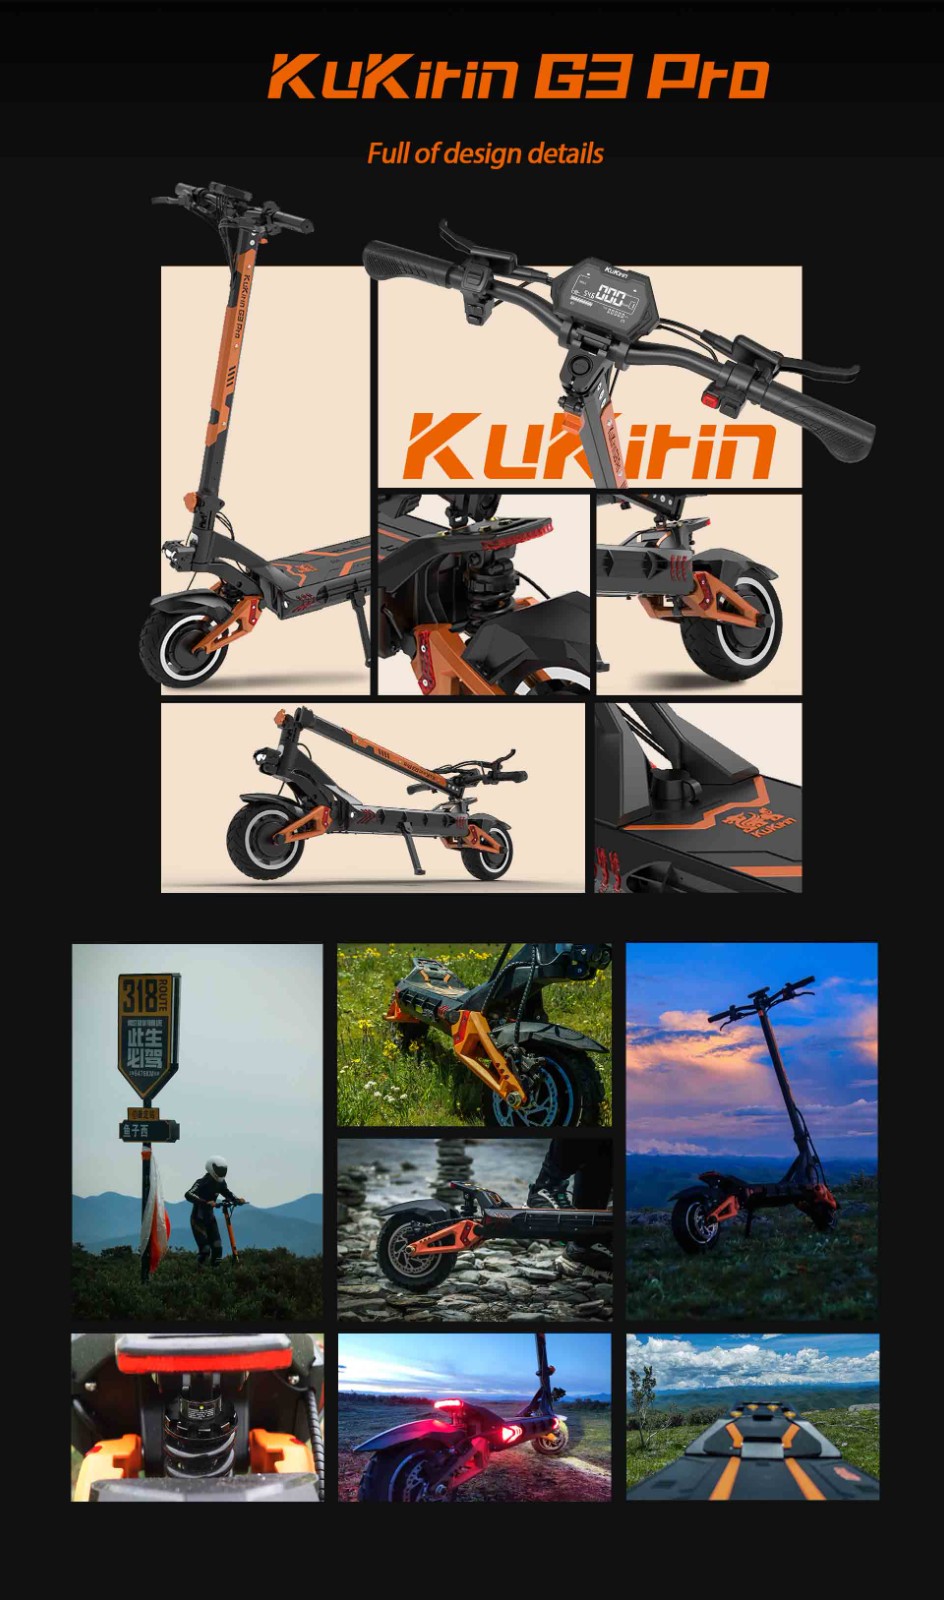 KuKirin G3 Pro 1200W*2 Moteurs Scooter électrique Tout-Terrain Pneus 10 Pouces, Batterie Amovible 52V 23.2Ah, Gamme Supérieure 80KM, Vitesse Max 65Km/h, Double Amortisseur, Étanche IP54, Double Freins à Huile